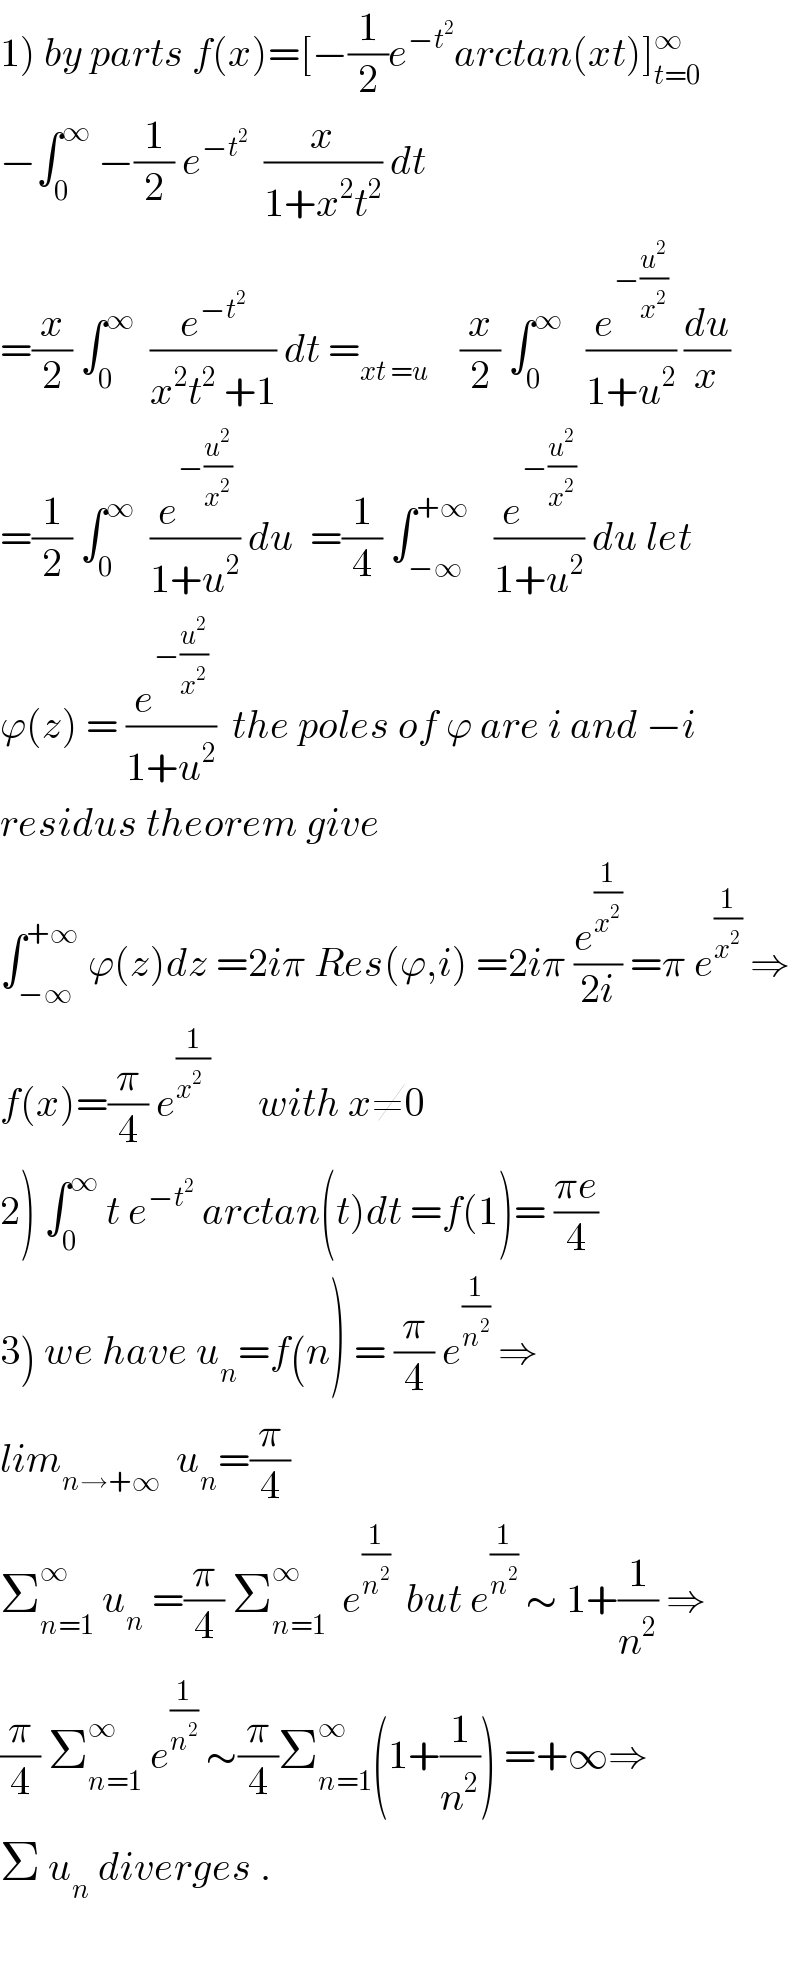 1) by parts f(x)=[−(1/2)e^(−t^2 ) arctan(xt)]_(t=0) ^∞   −∫_0 ^∞  −(1/2) e^(−t^2 )   (x/(1+x^2 t^2 )) dt  =(x/2) ∫_0 ^∞   (e^(−t^2 ) /(x^2 t^2  +1)) dt =_(xt =u)     (x/2) ∫_0 ^∞    (e^(−(u^2 /x^2 )) /(1+u^2 )) (du/x)  =(1/2) ∫_0 ^∞   (e^(−(u^2 /x^2 )) /(1+u^2 )) du  =(1/4) ∫_(−∞) ^(+∞)    (e^(−(u^2 /x^2 )) /(1+u^2 )) du let  ϕ(z) = (e^(−(u^2 /x^2 )) /(1+u^2 ))  the poles of ϕ are i and −i   residus theorem give   ∫_(−∞) ^(+∞)  ϕ(z)dz =2iπ Res(ϕ,i) =2iπ (e^(1/x^2 ) /(2i)) =π e^(1/x^2 )  ⇒  f(x)=(π/4) e^(1/(x^2   ))       with x≠0  2) ∫_0 ^∞  t e^(−t^2 )  arctan(t)dt =f(1)= ((πe)/4)  3) we have u_n =f(n) = (π/4) e^(1/n^2 )  ⇒  lim_(n→+∞)   u_n =(π/4)  Σ_(n=1) ^∞  u_n  =(π/4) Σ_(n=1) ^∞   e^(1/n^2 )   but e^(1/n^2 )  ∼ 1+(1/n^2 ) ⇒  (π/4) Σ_(n=1) ^∞  e^(1/n^2 )  ∼(π/4)Σ_(n=1) ^∞ (1+(1/n^2 )) =+∞⇒  Σ u_n  diverges .    